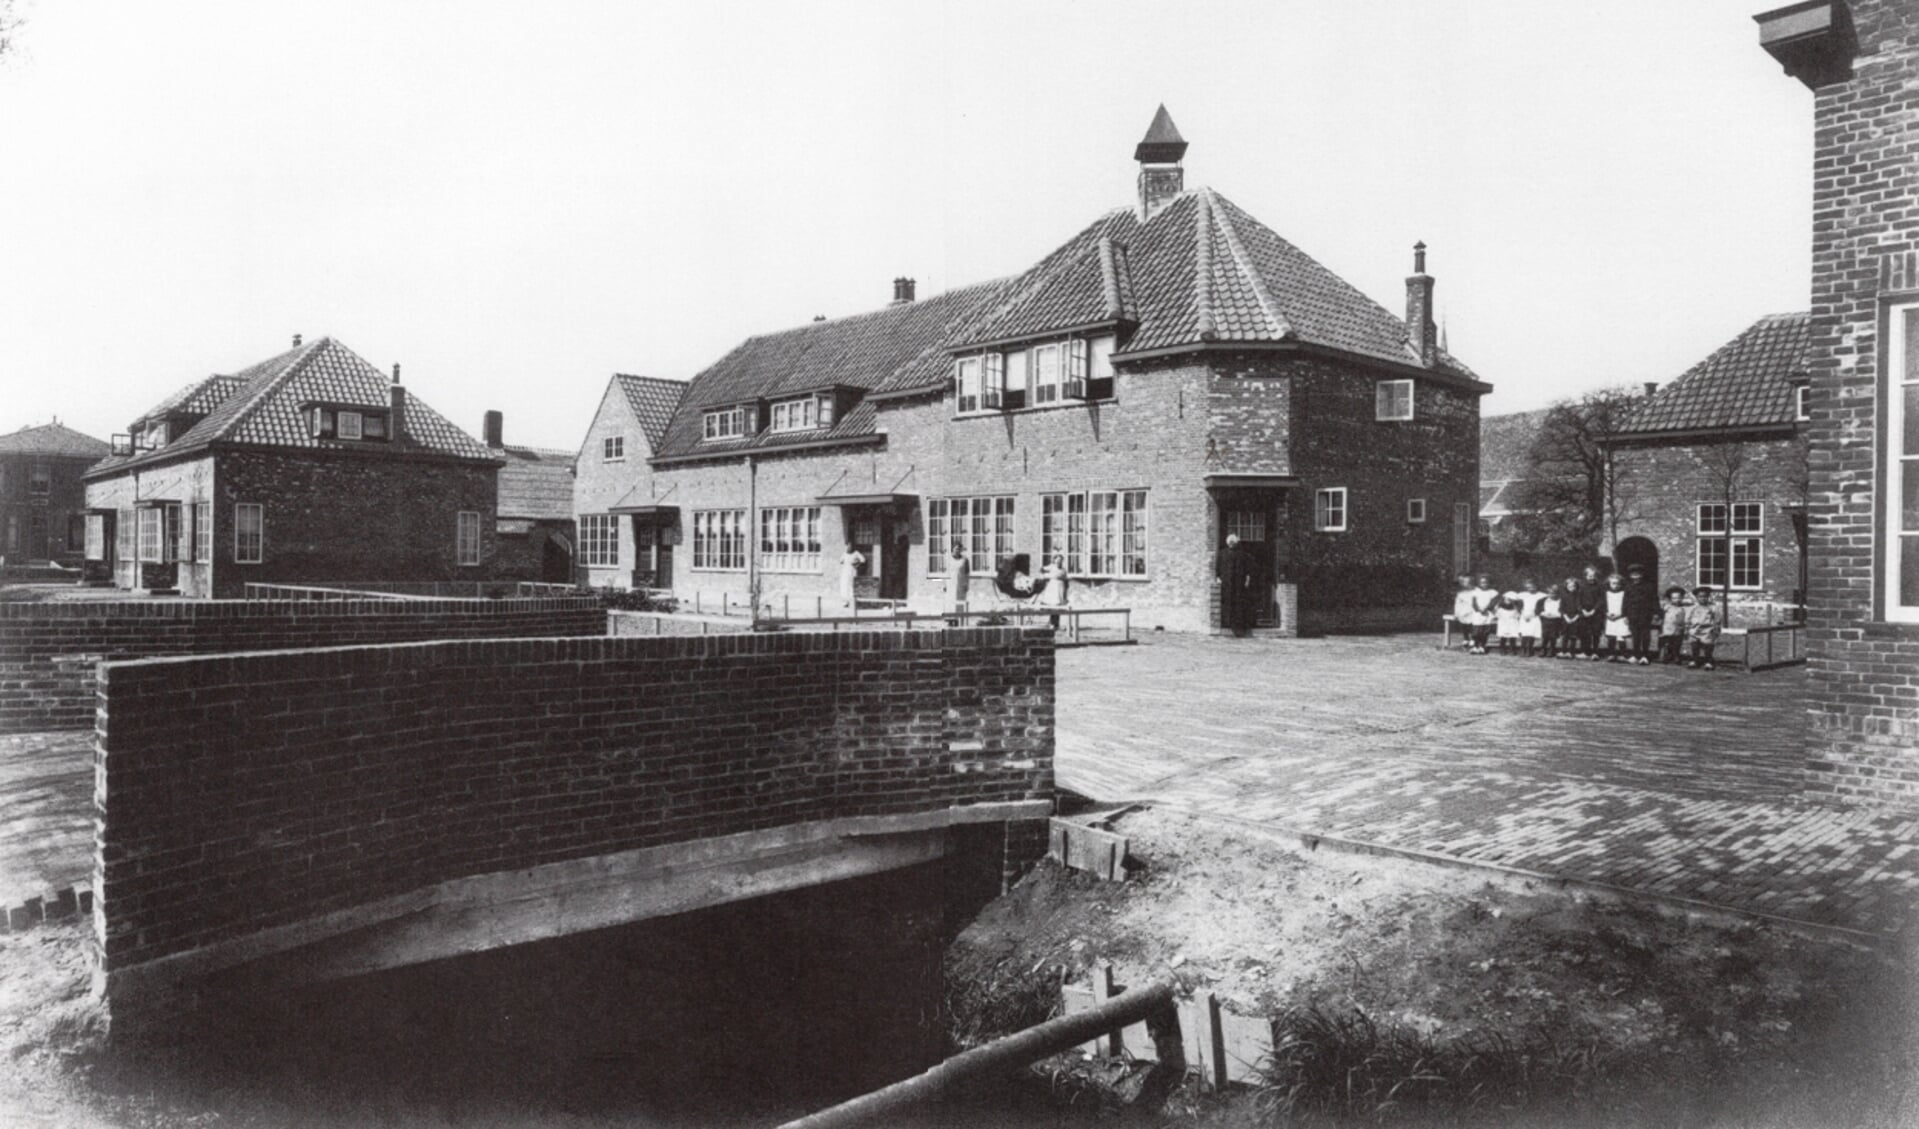 Van Leeuwenpark. Vooraanzicht vanaf de Hoogmadeseweg. Vermoedelijk 1916-1917.